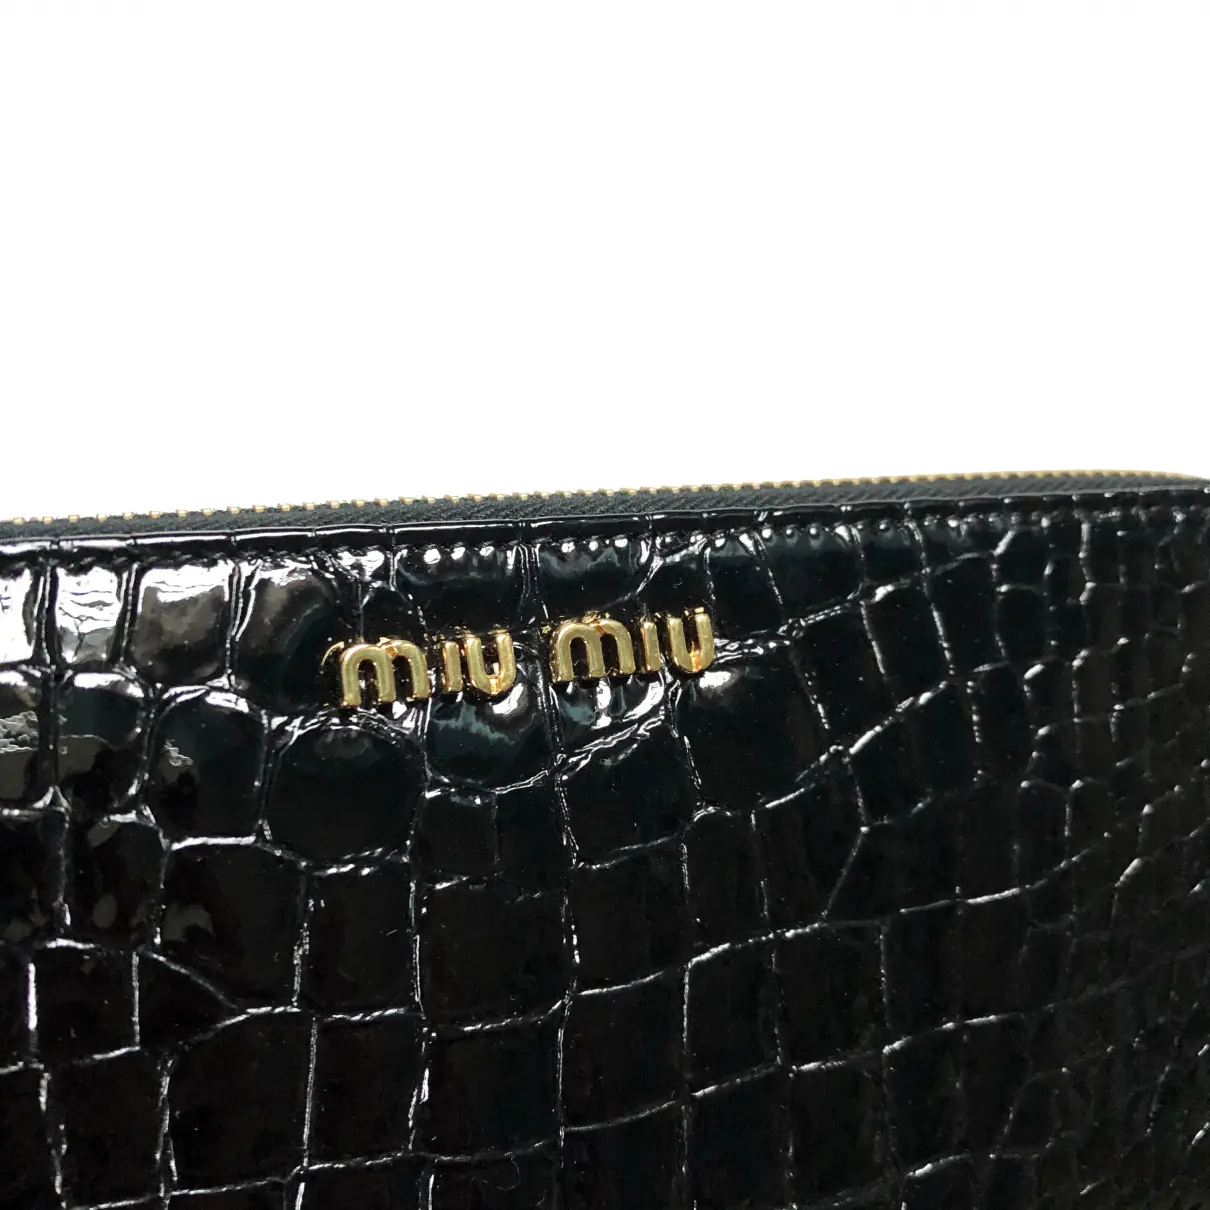 Crocodile wallet Miu Miu